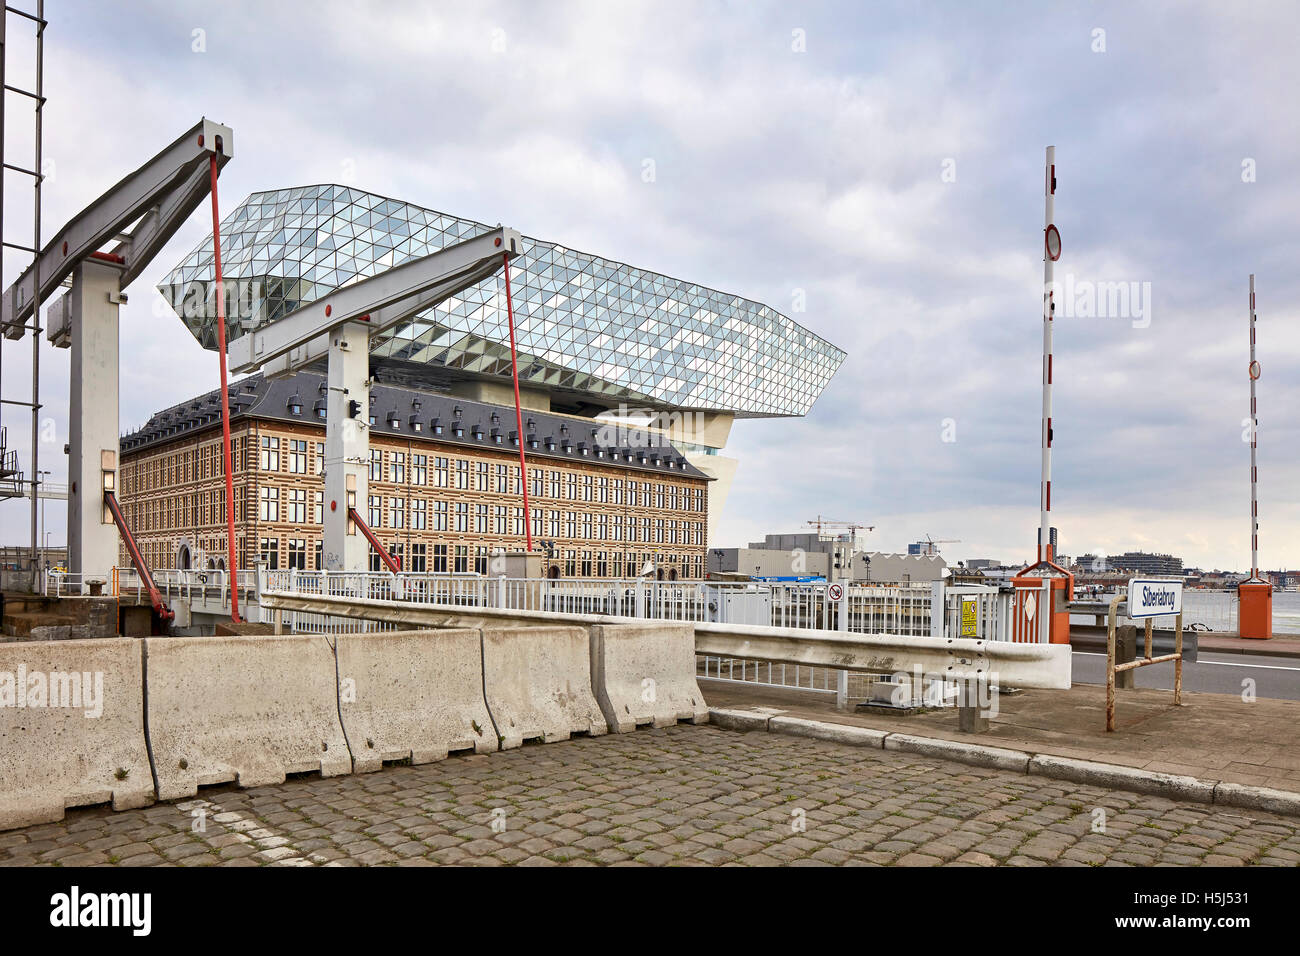 Distante, vista contestuale. Casa porta ad Anversa, Belgio. Architetto: Zaha Hadid Architects, 2016. Foto Stock